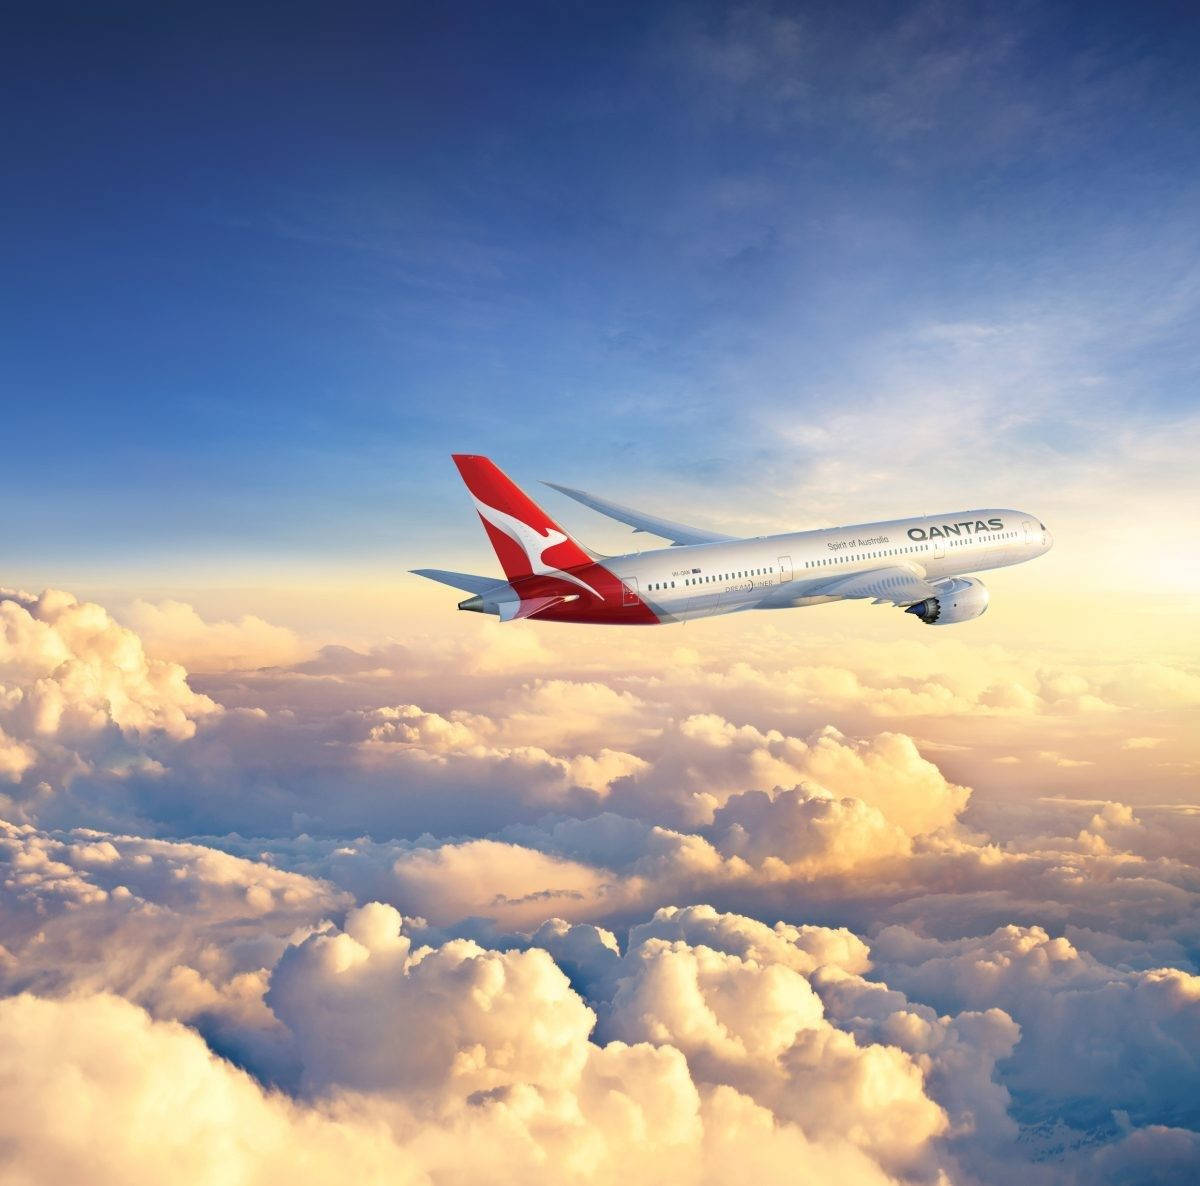 Qantas Aircraft Over The Horizon Wallpaper